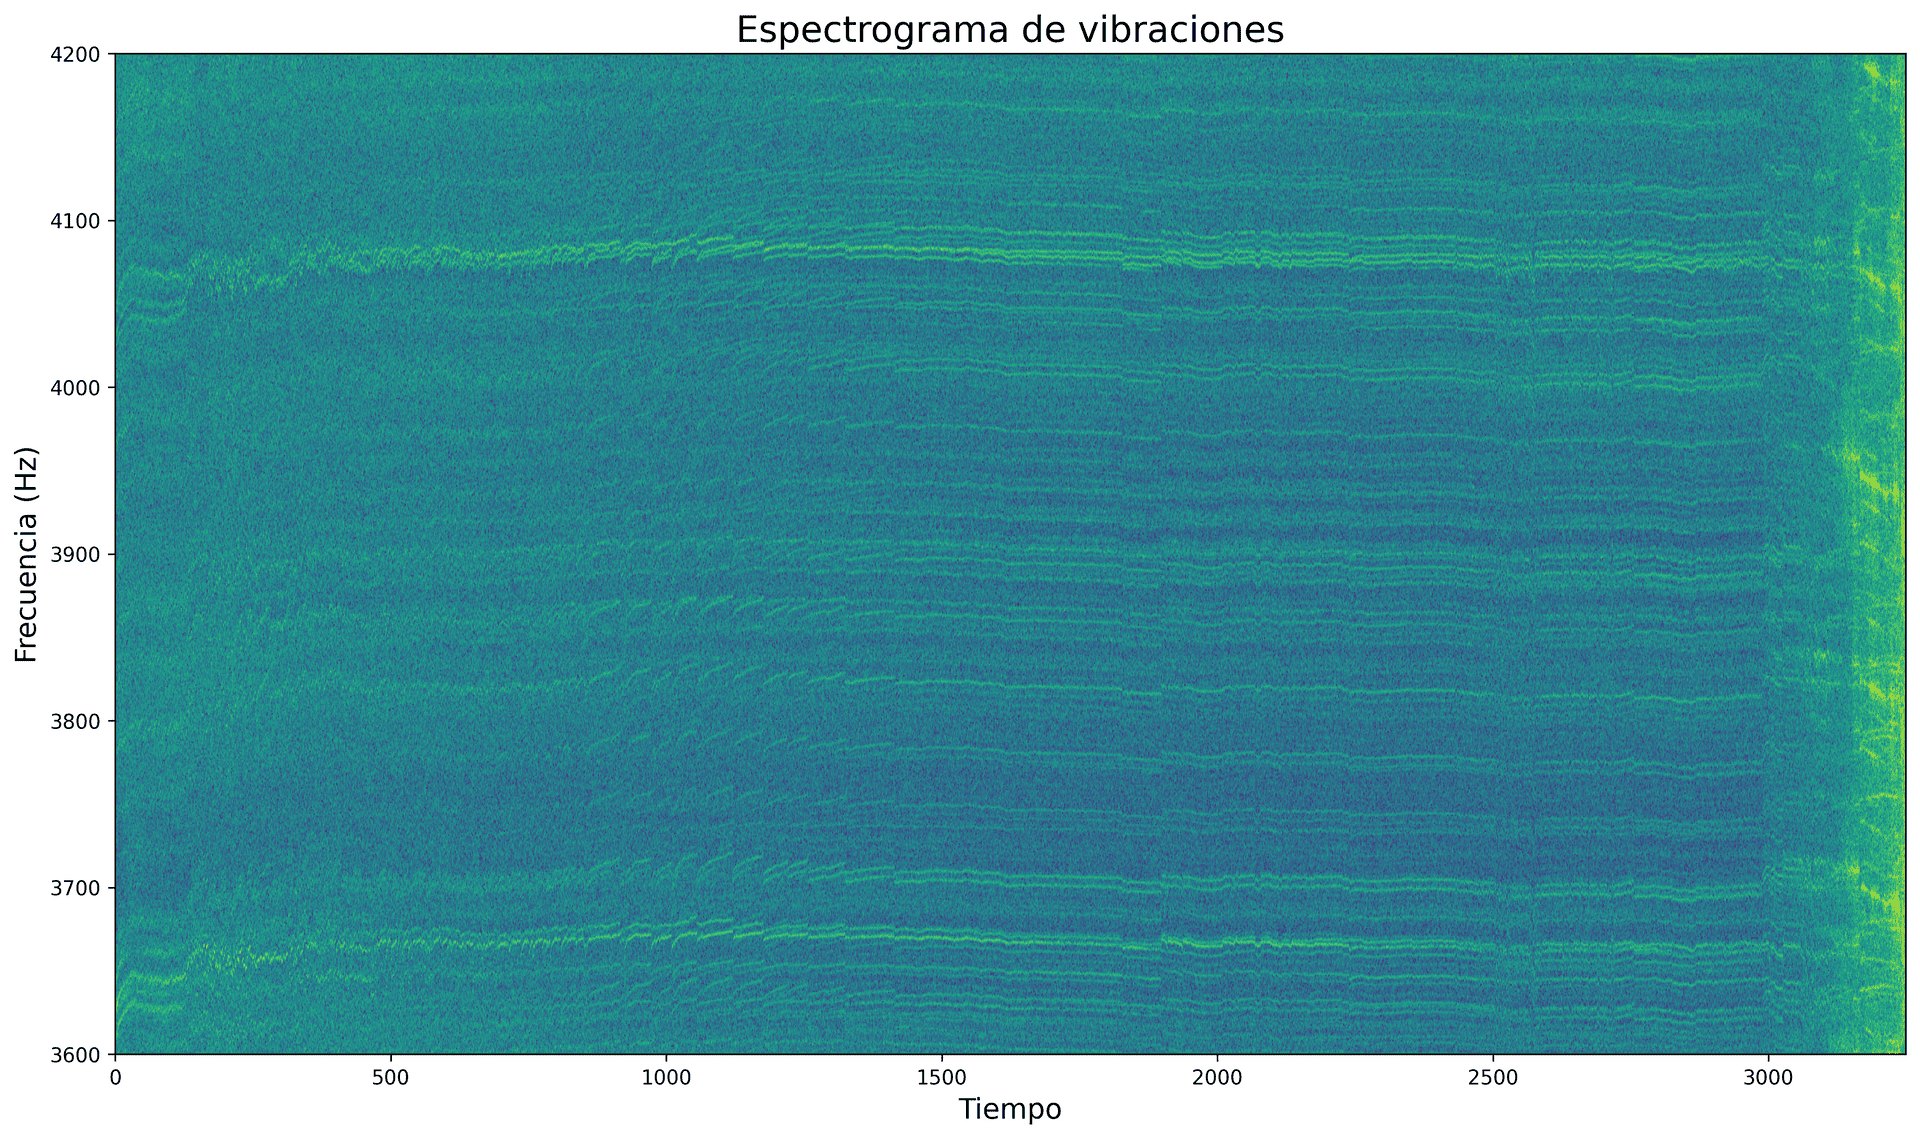 Espectrograma de vibraciones de un rodamiento